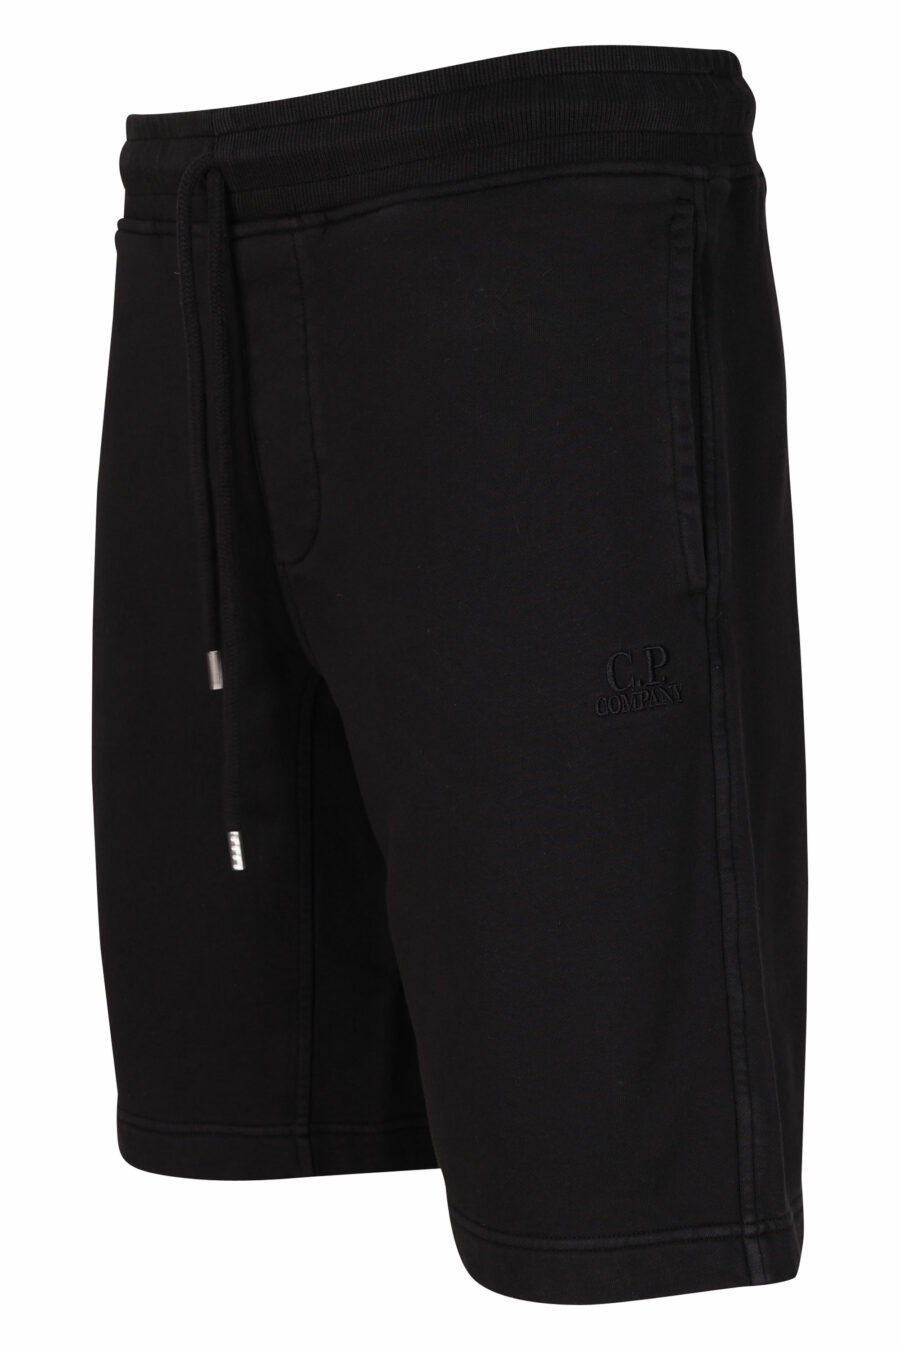 Pantalón de chándal negro con minilogo bordado monocromático - 7620943731828 1